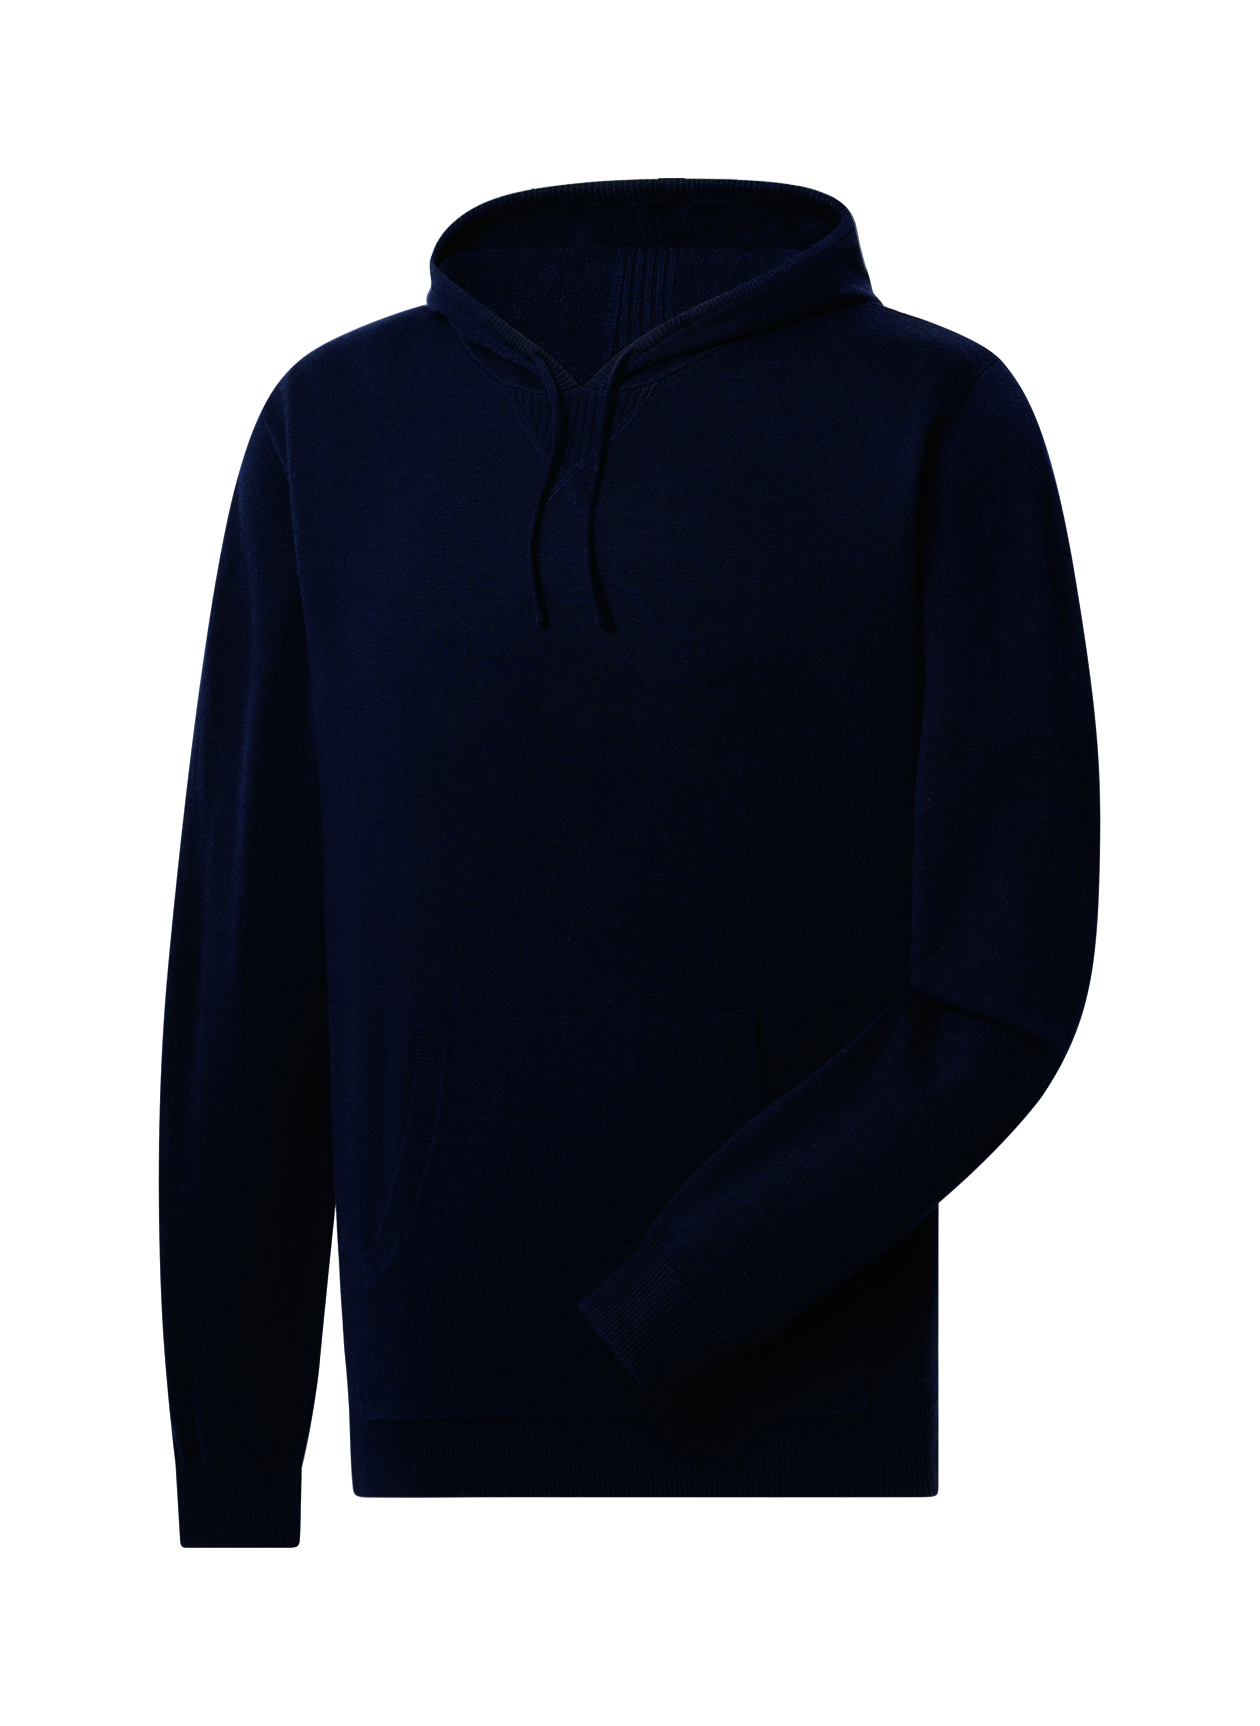 FootJoy Men's Navy Sweater Hoodie